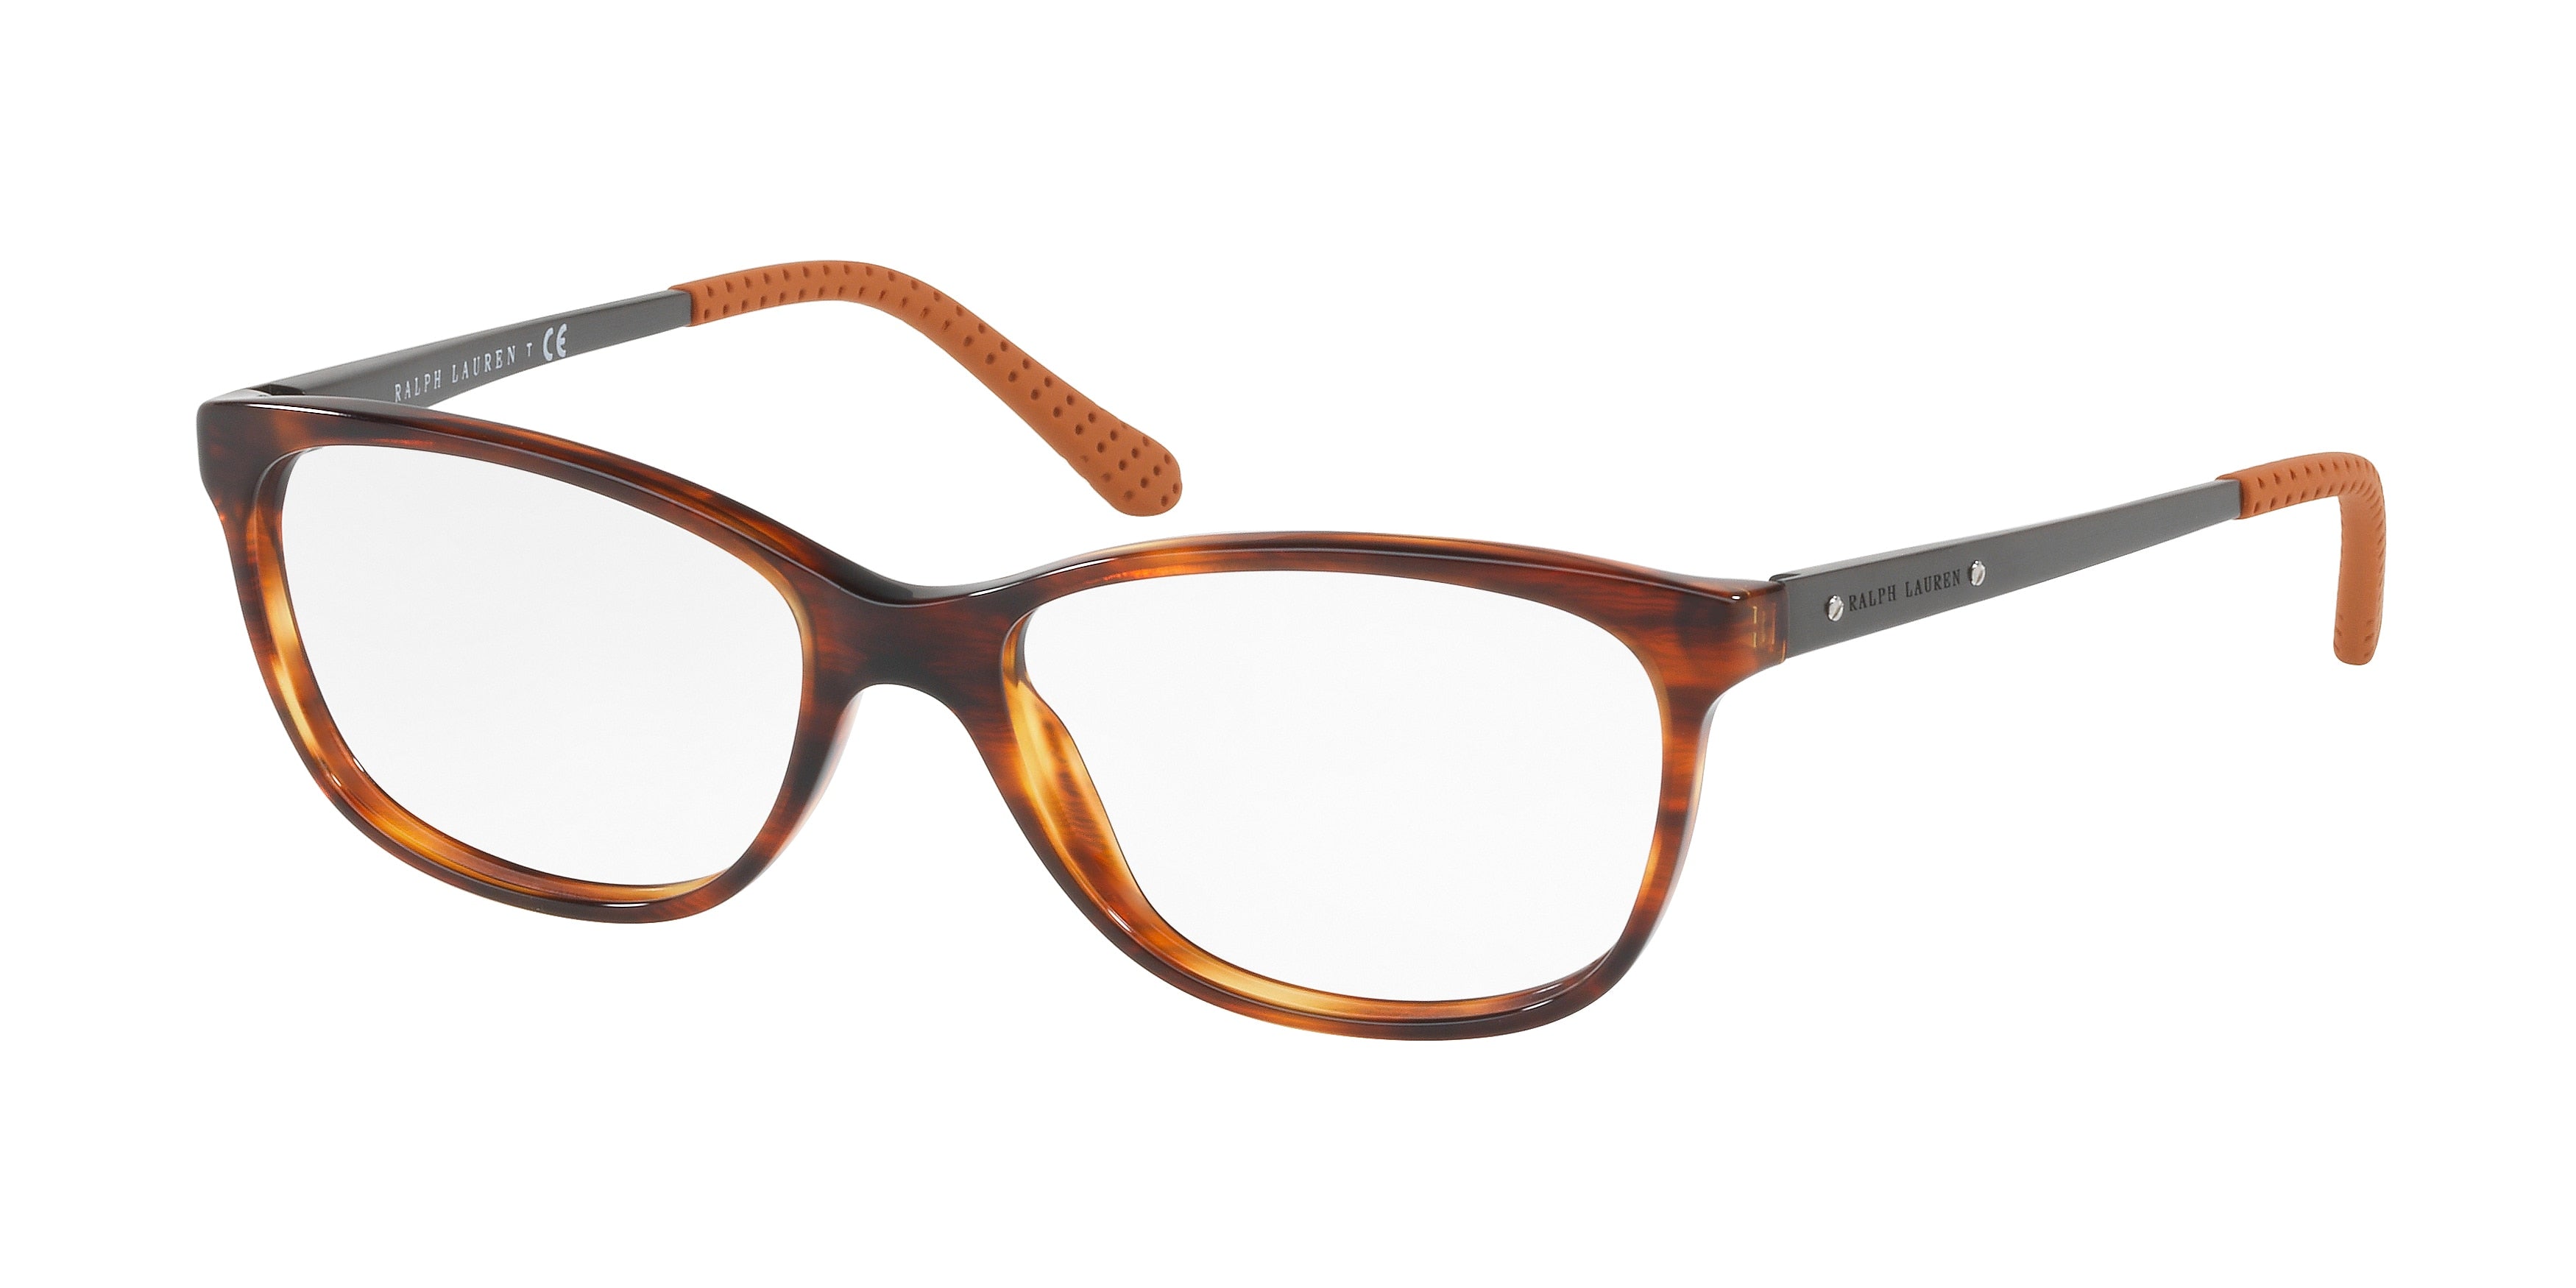 Ralph Lauren RL6135 Rectangle Eyeglasses  5007-Shiny Striped Havana 52-140-16 - Color Map Tortoise